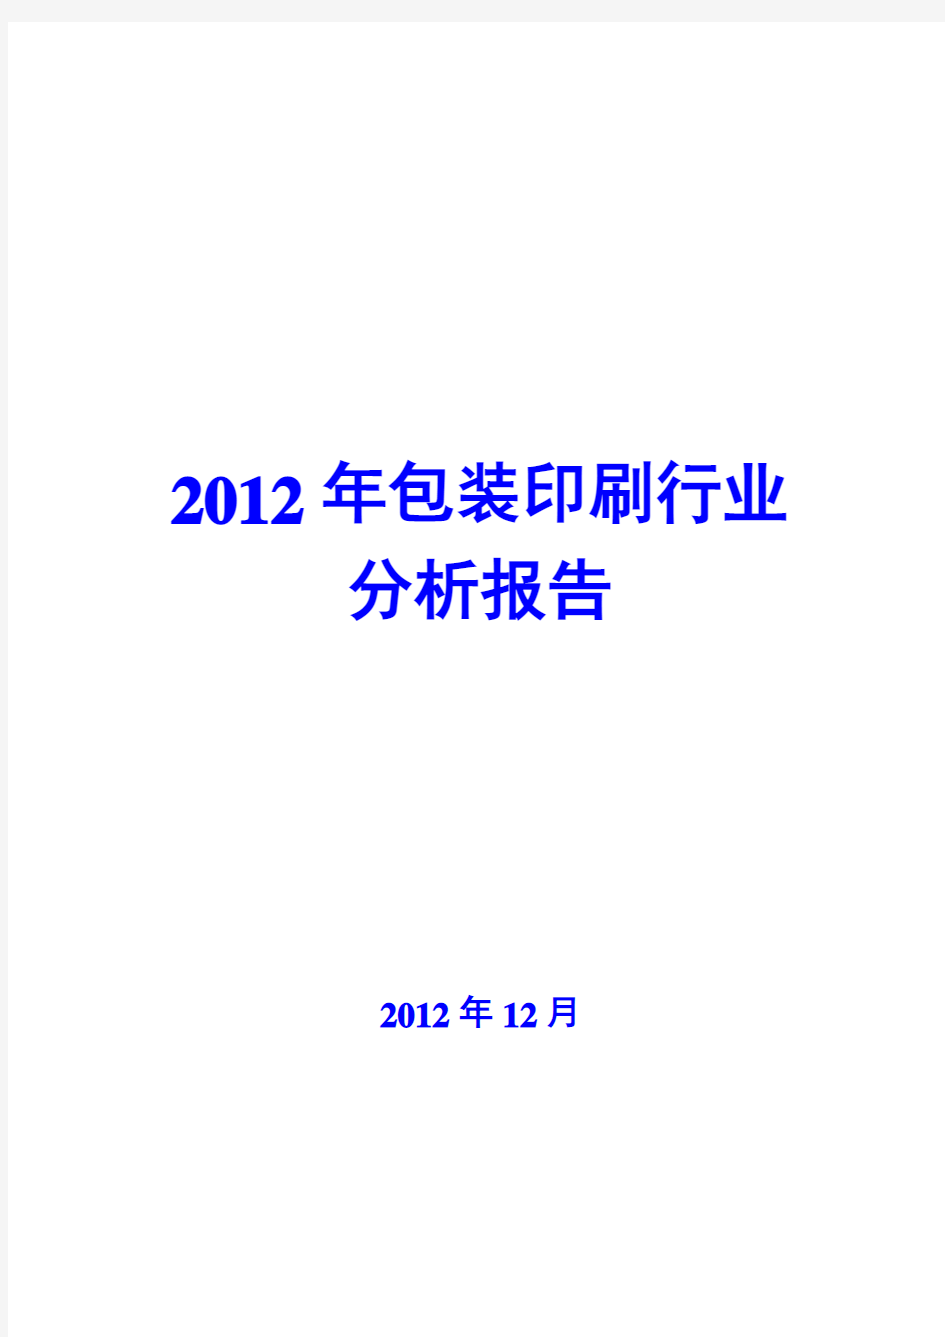 2012年包装印刷行业分析报告